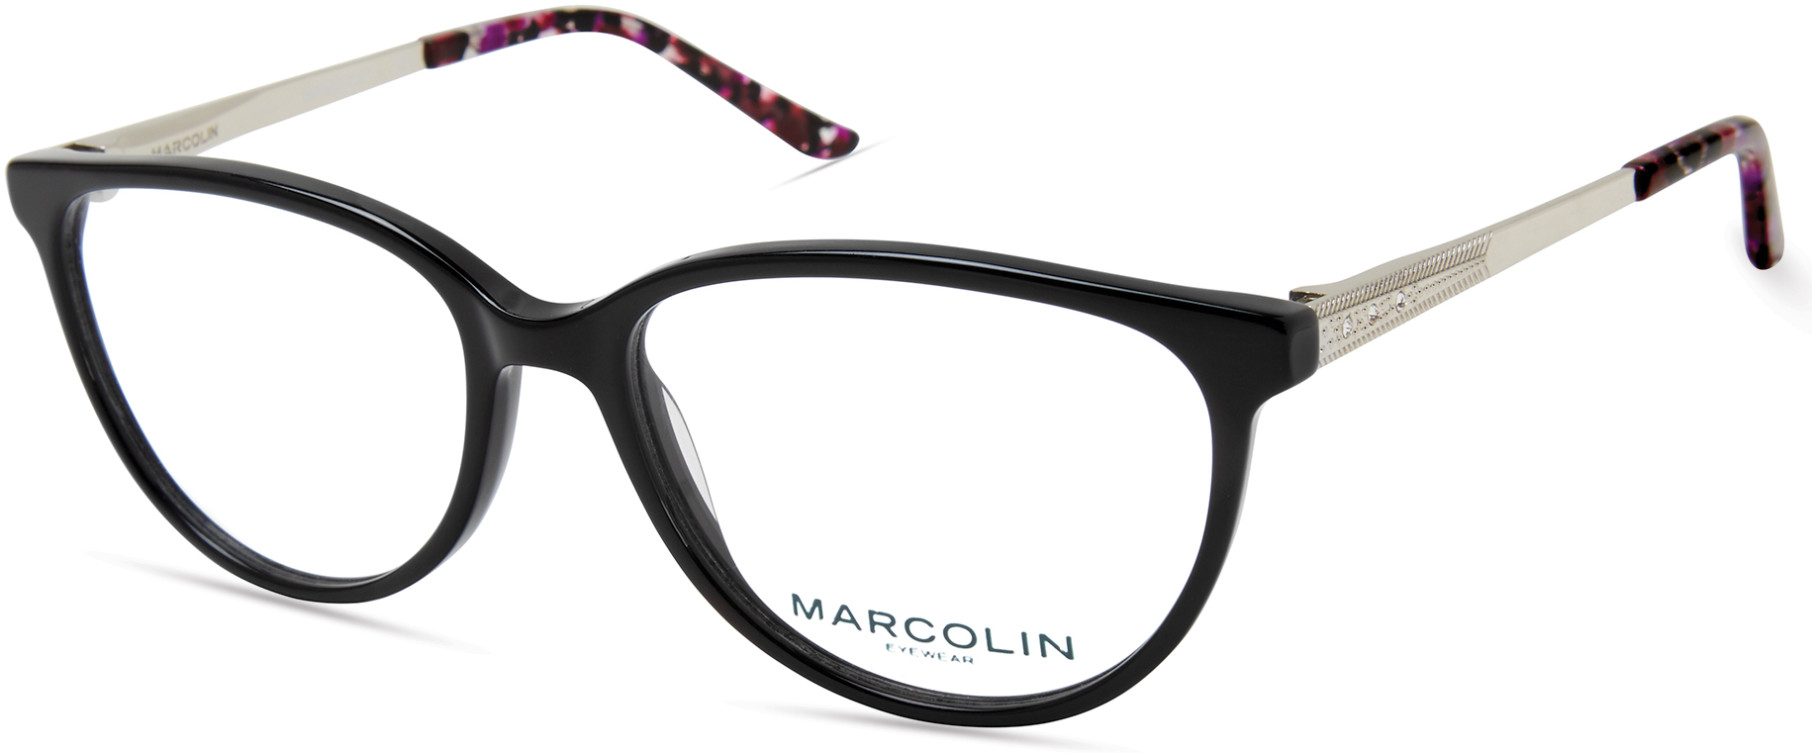 MARCOLIN 5019 001